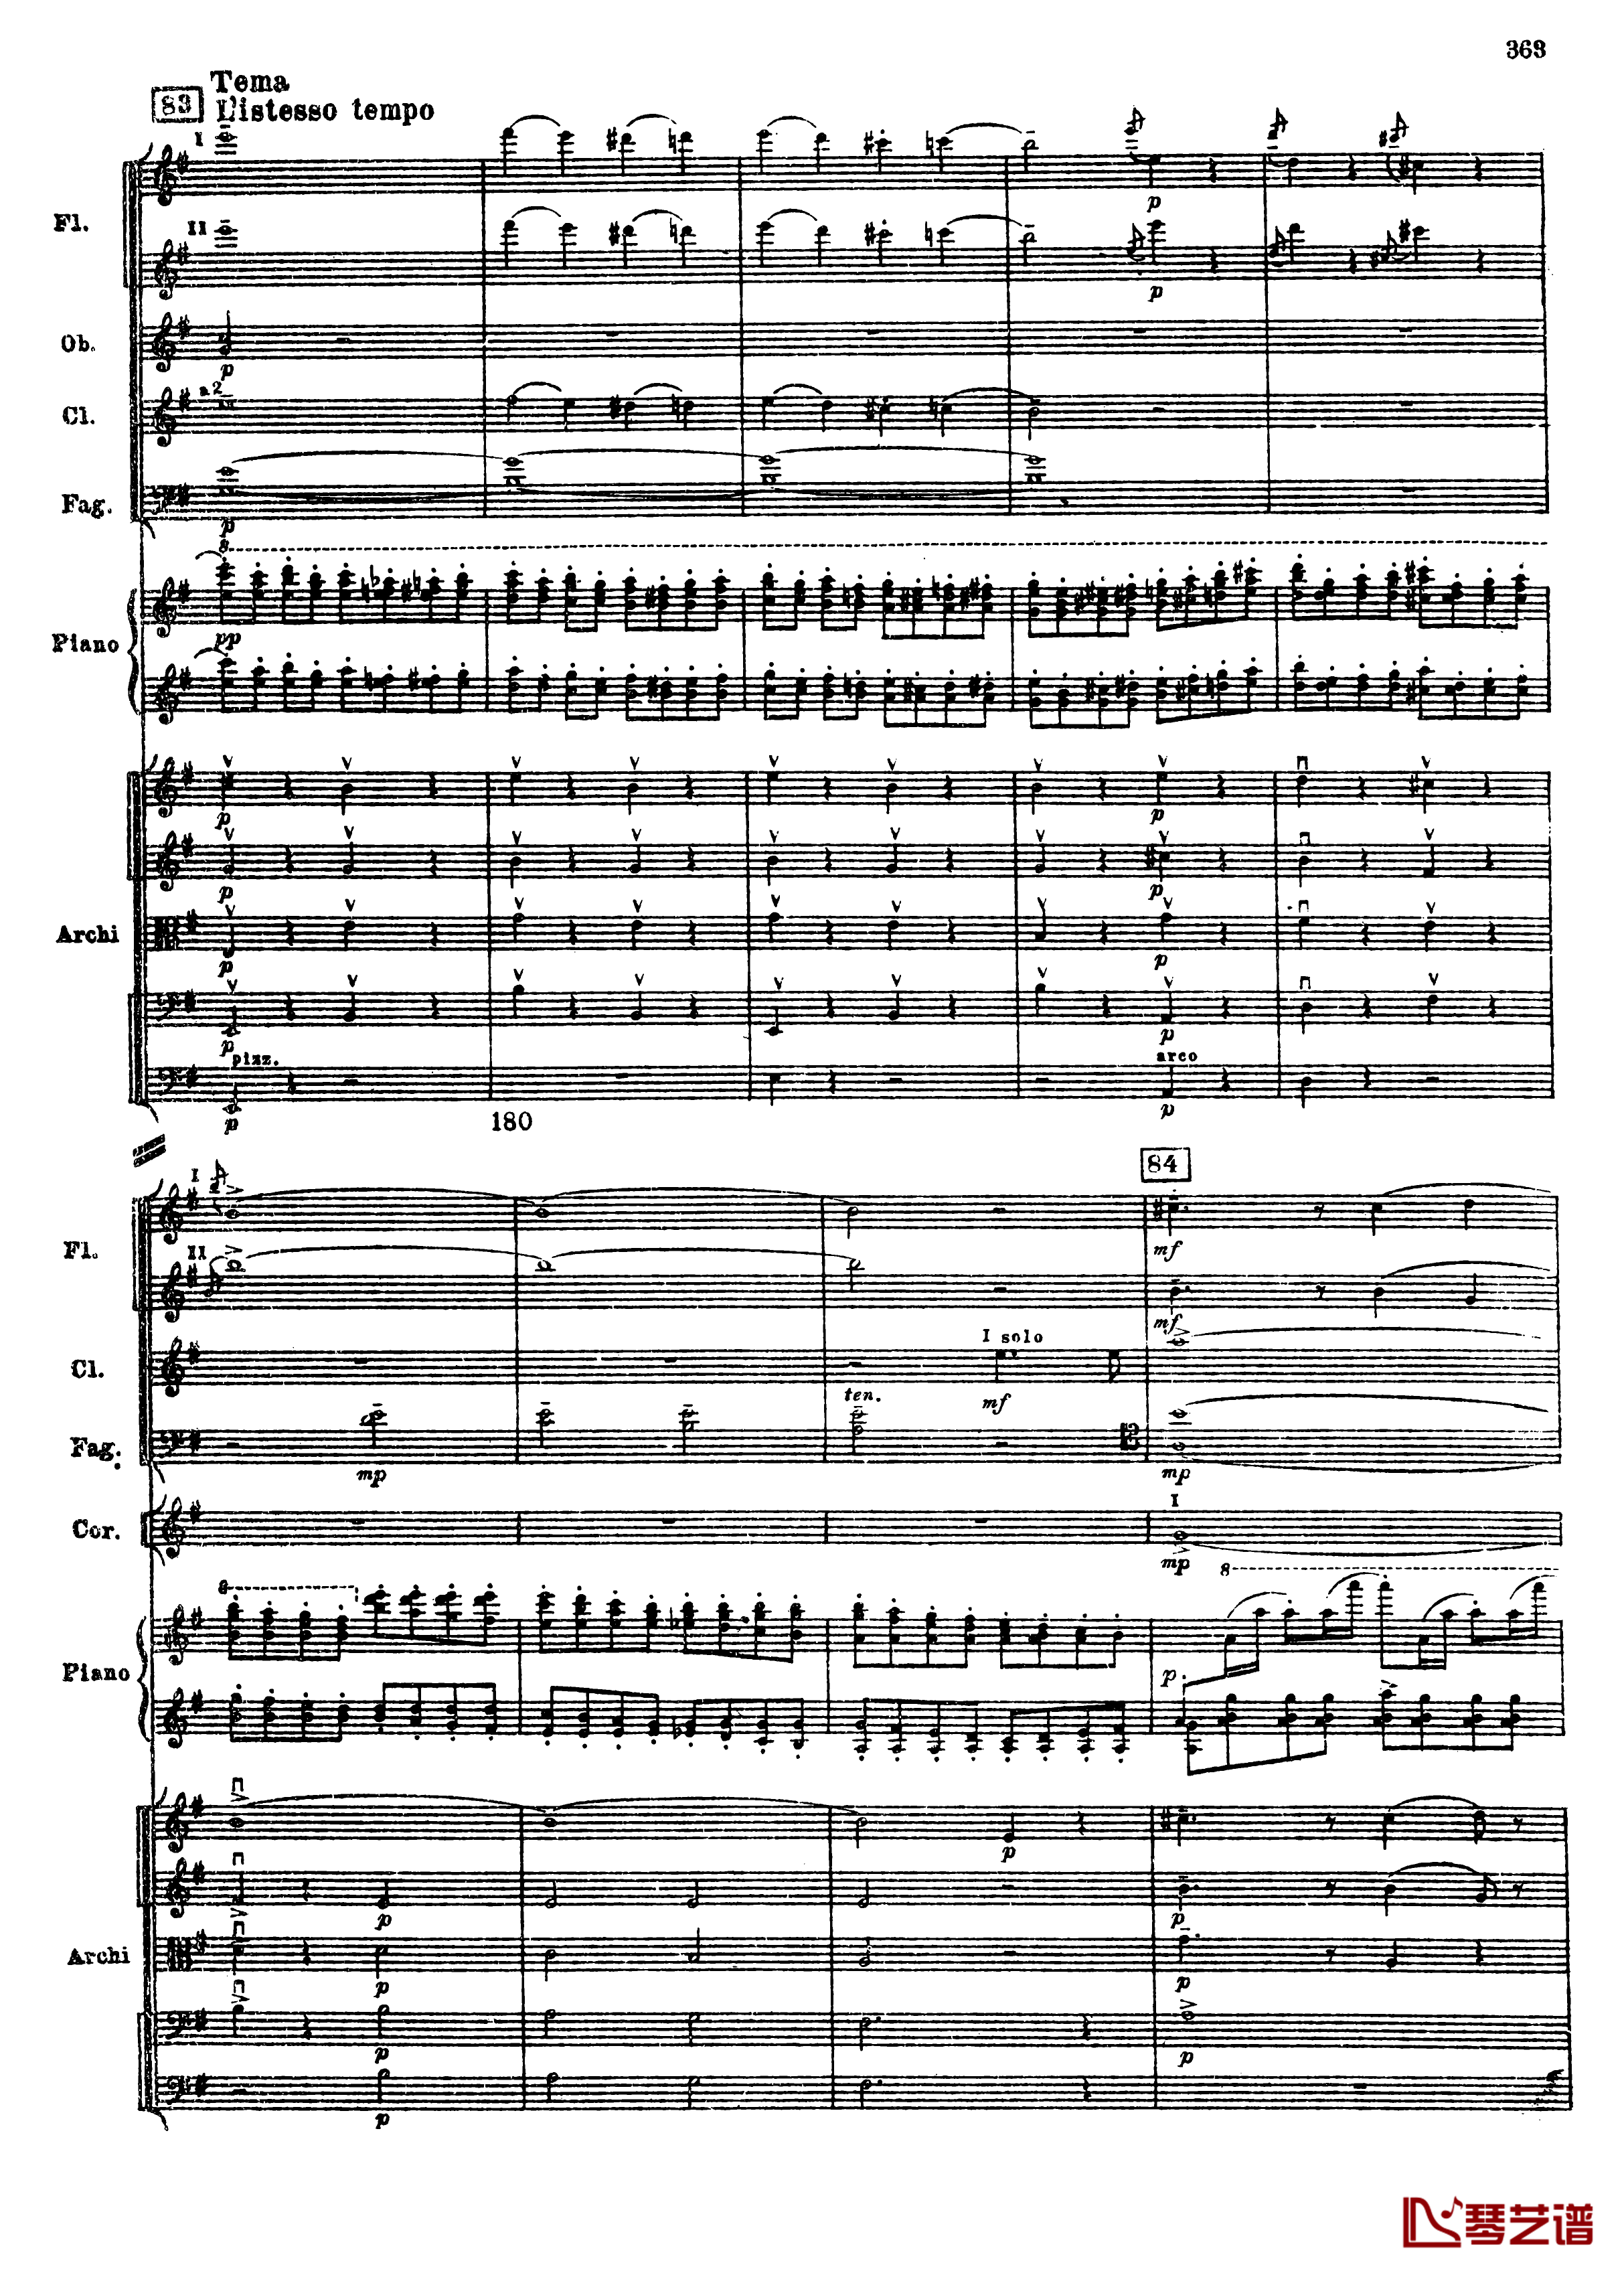 普罗科菲耶夫第三钢琴协奏曲钢琴谱-总谱-普罗科非耶夫95